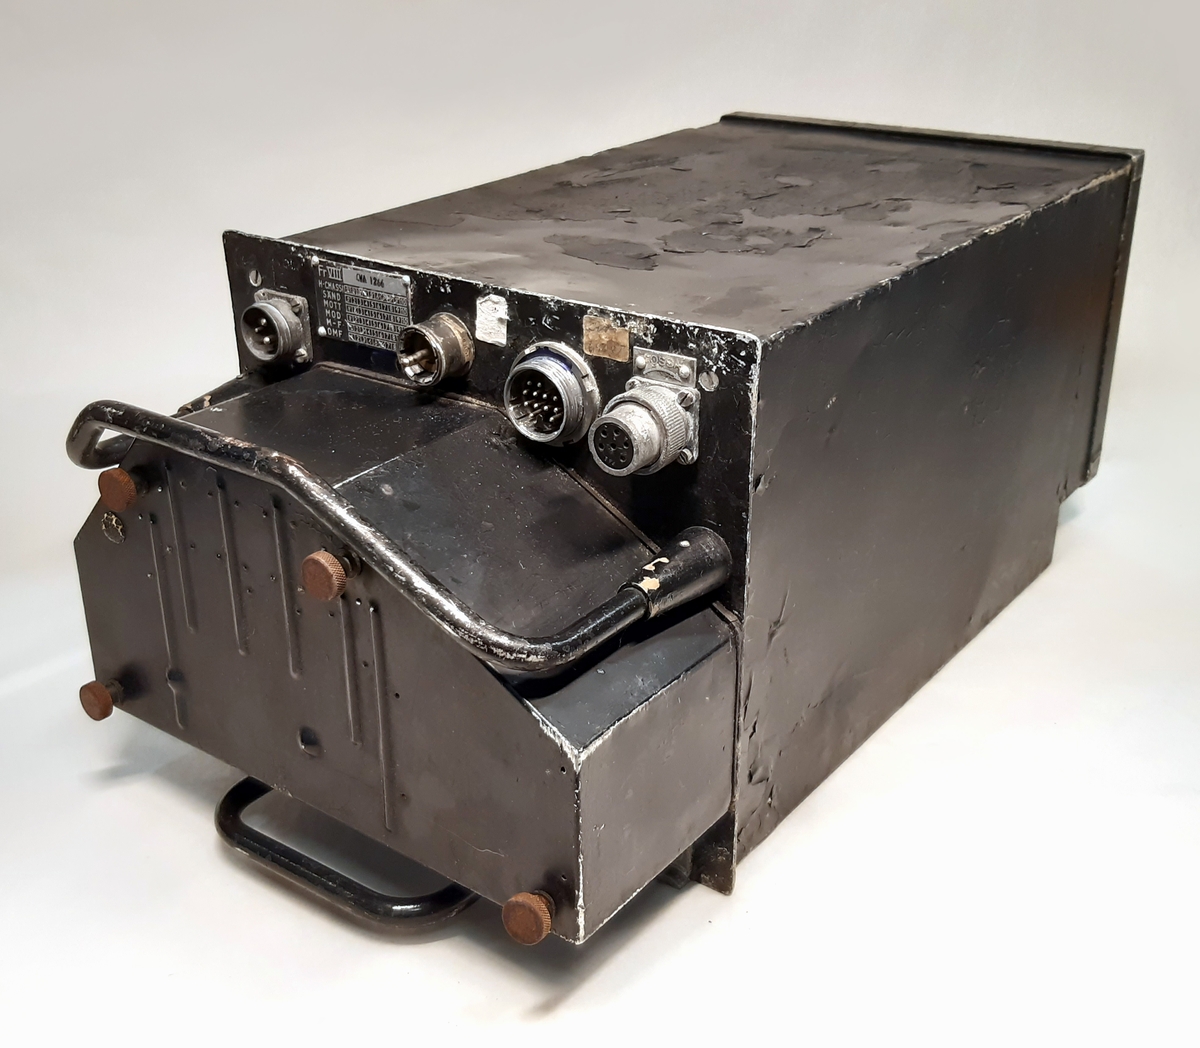 SM-enhet till flygradio FR 8. Bestående av en svart låda i metall, med i fronten ett utskjutande parti med fyra stick-kontakter, samt två bärhandtag.